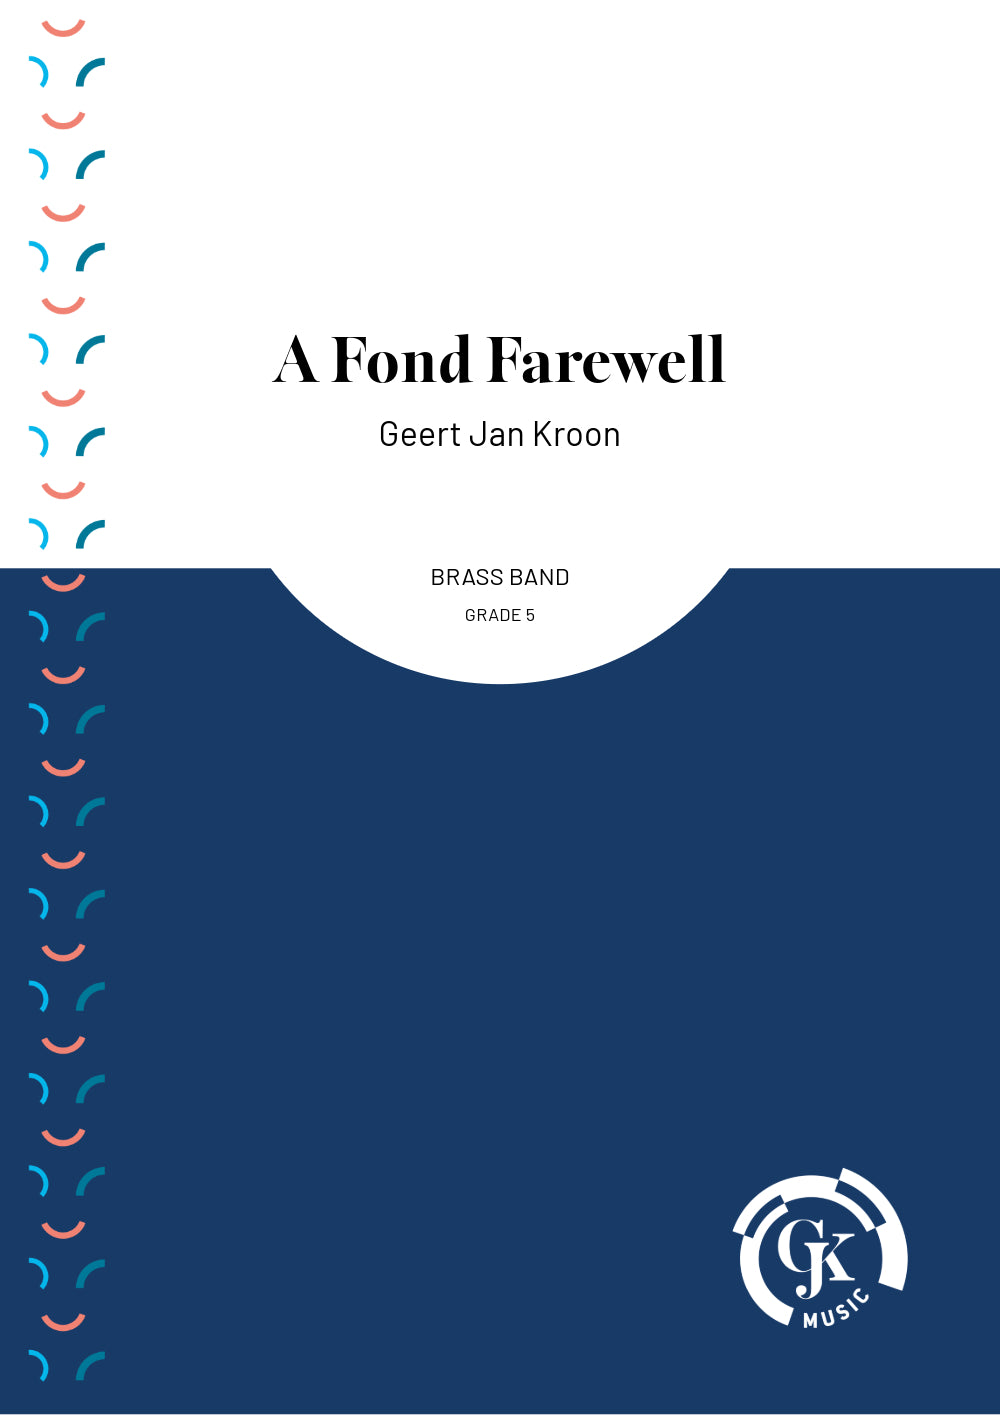 A Fond Farewell - Brass Band